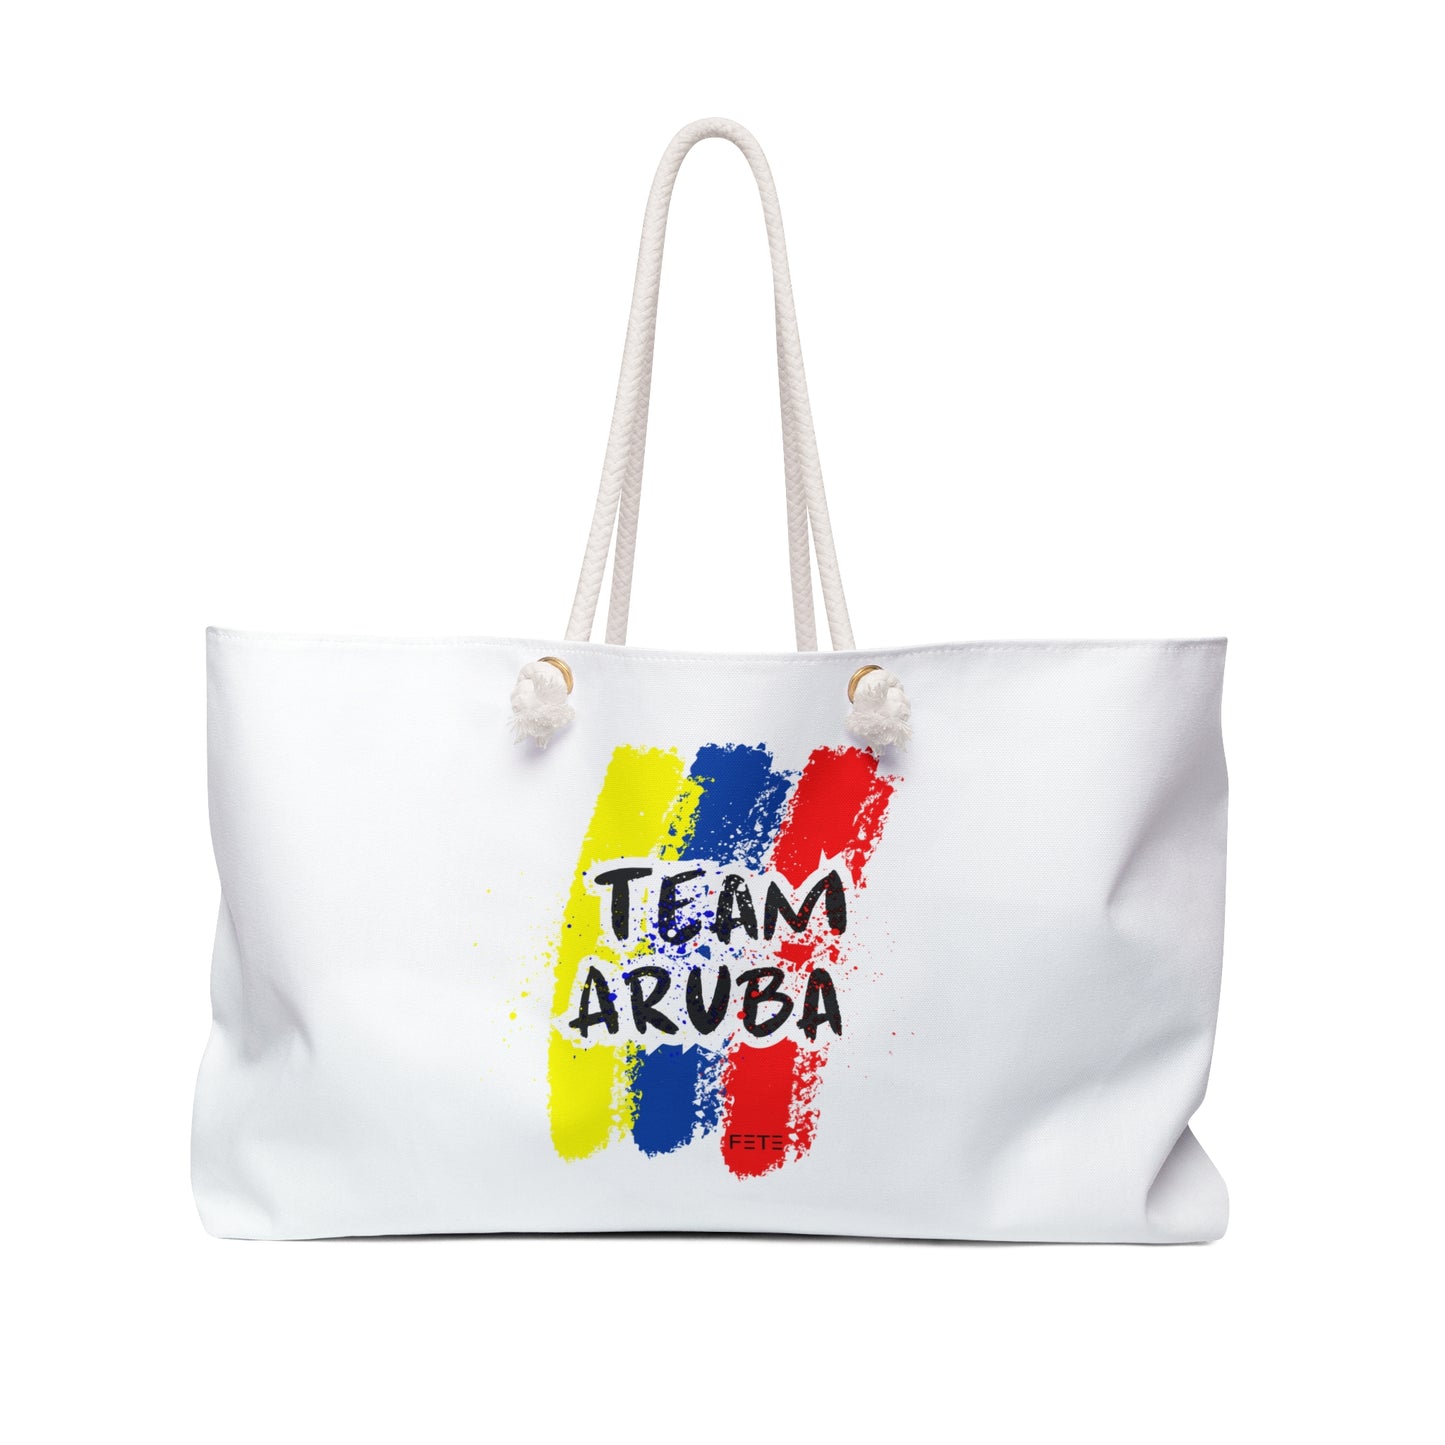 Team Aruba Weekender Bag